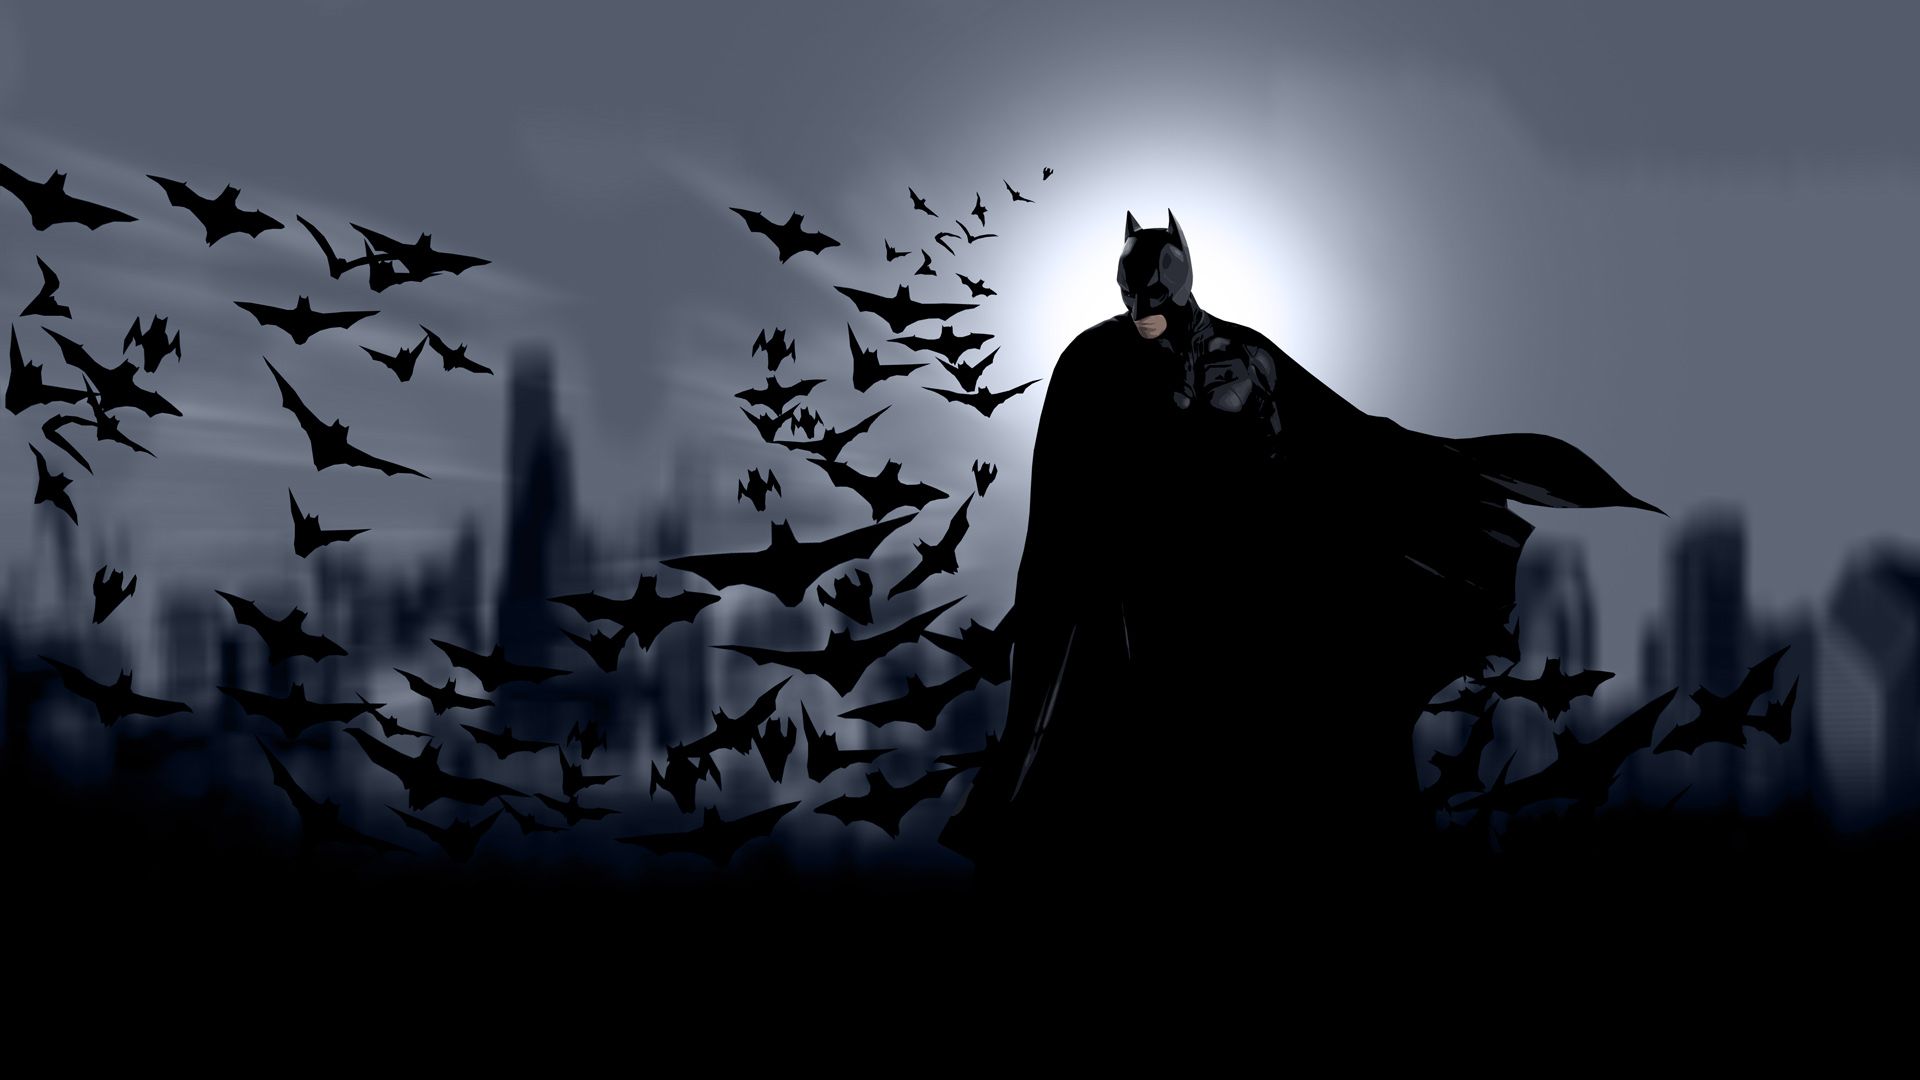 Batman begins hd wallpaper batman backgrounds batman comic wallpaper batman wallpaper